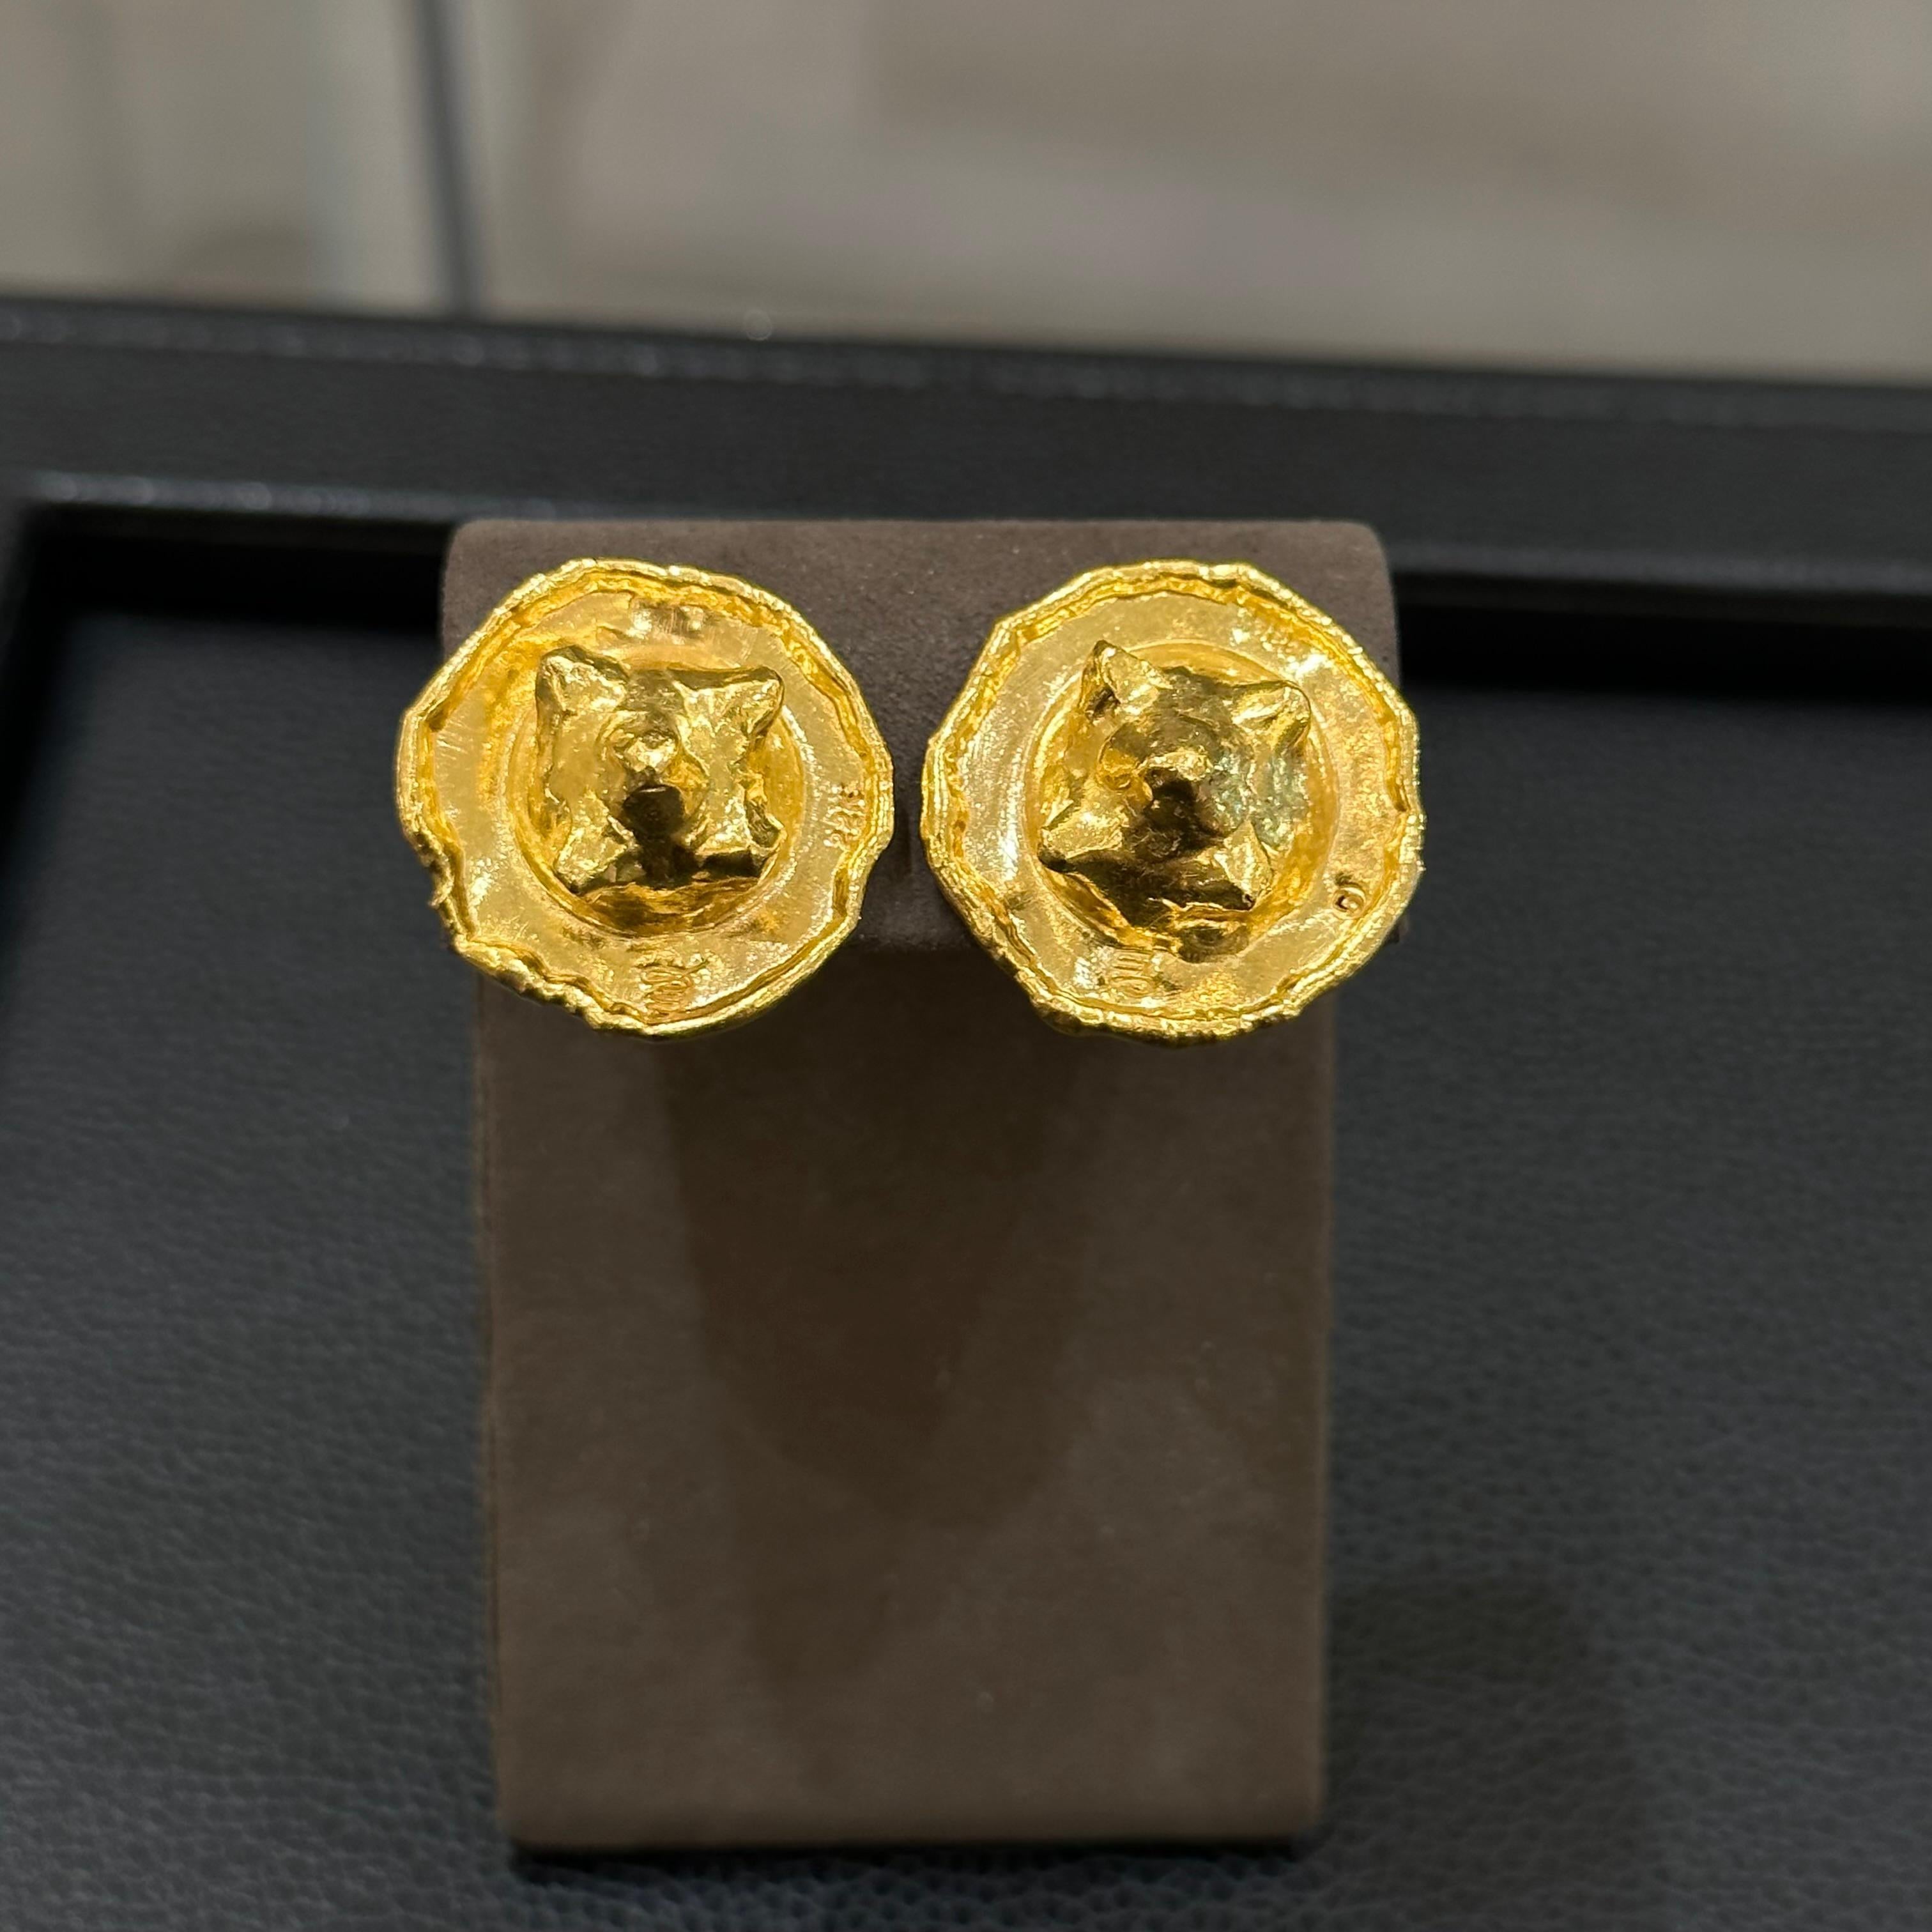 Boucles d'oreilles 22K Jean Mahie. Profil rond avec centre en forme de nodule bombé. 18,10 grammes d'or 22 carats.